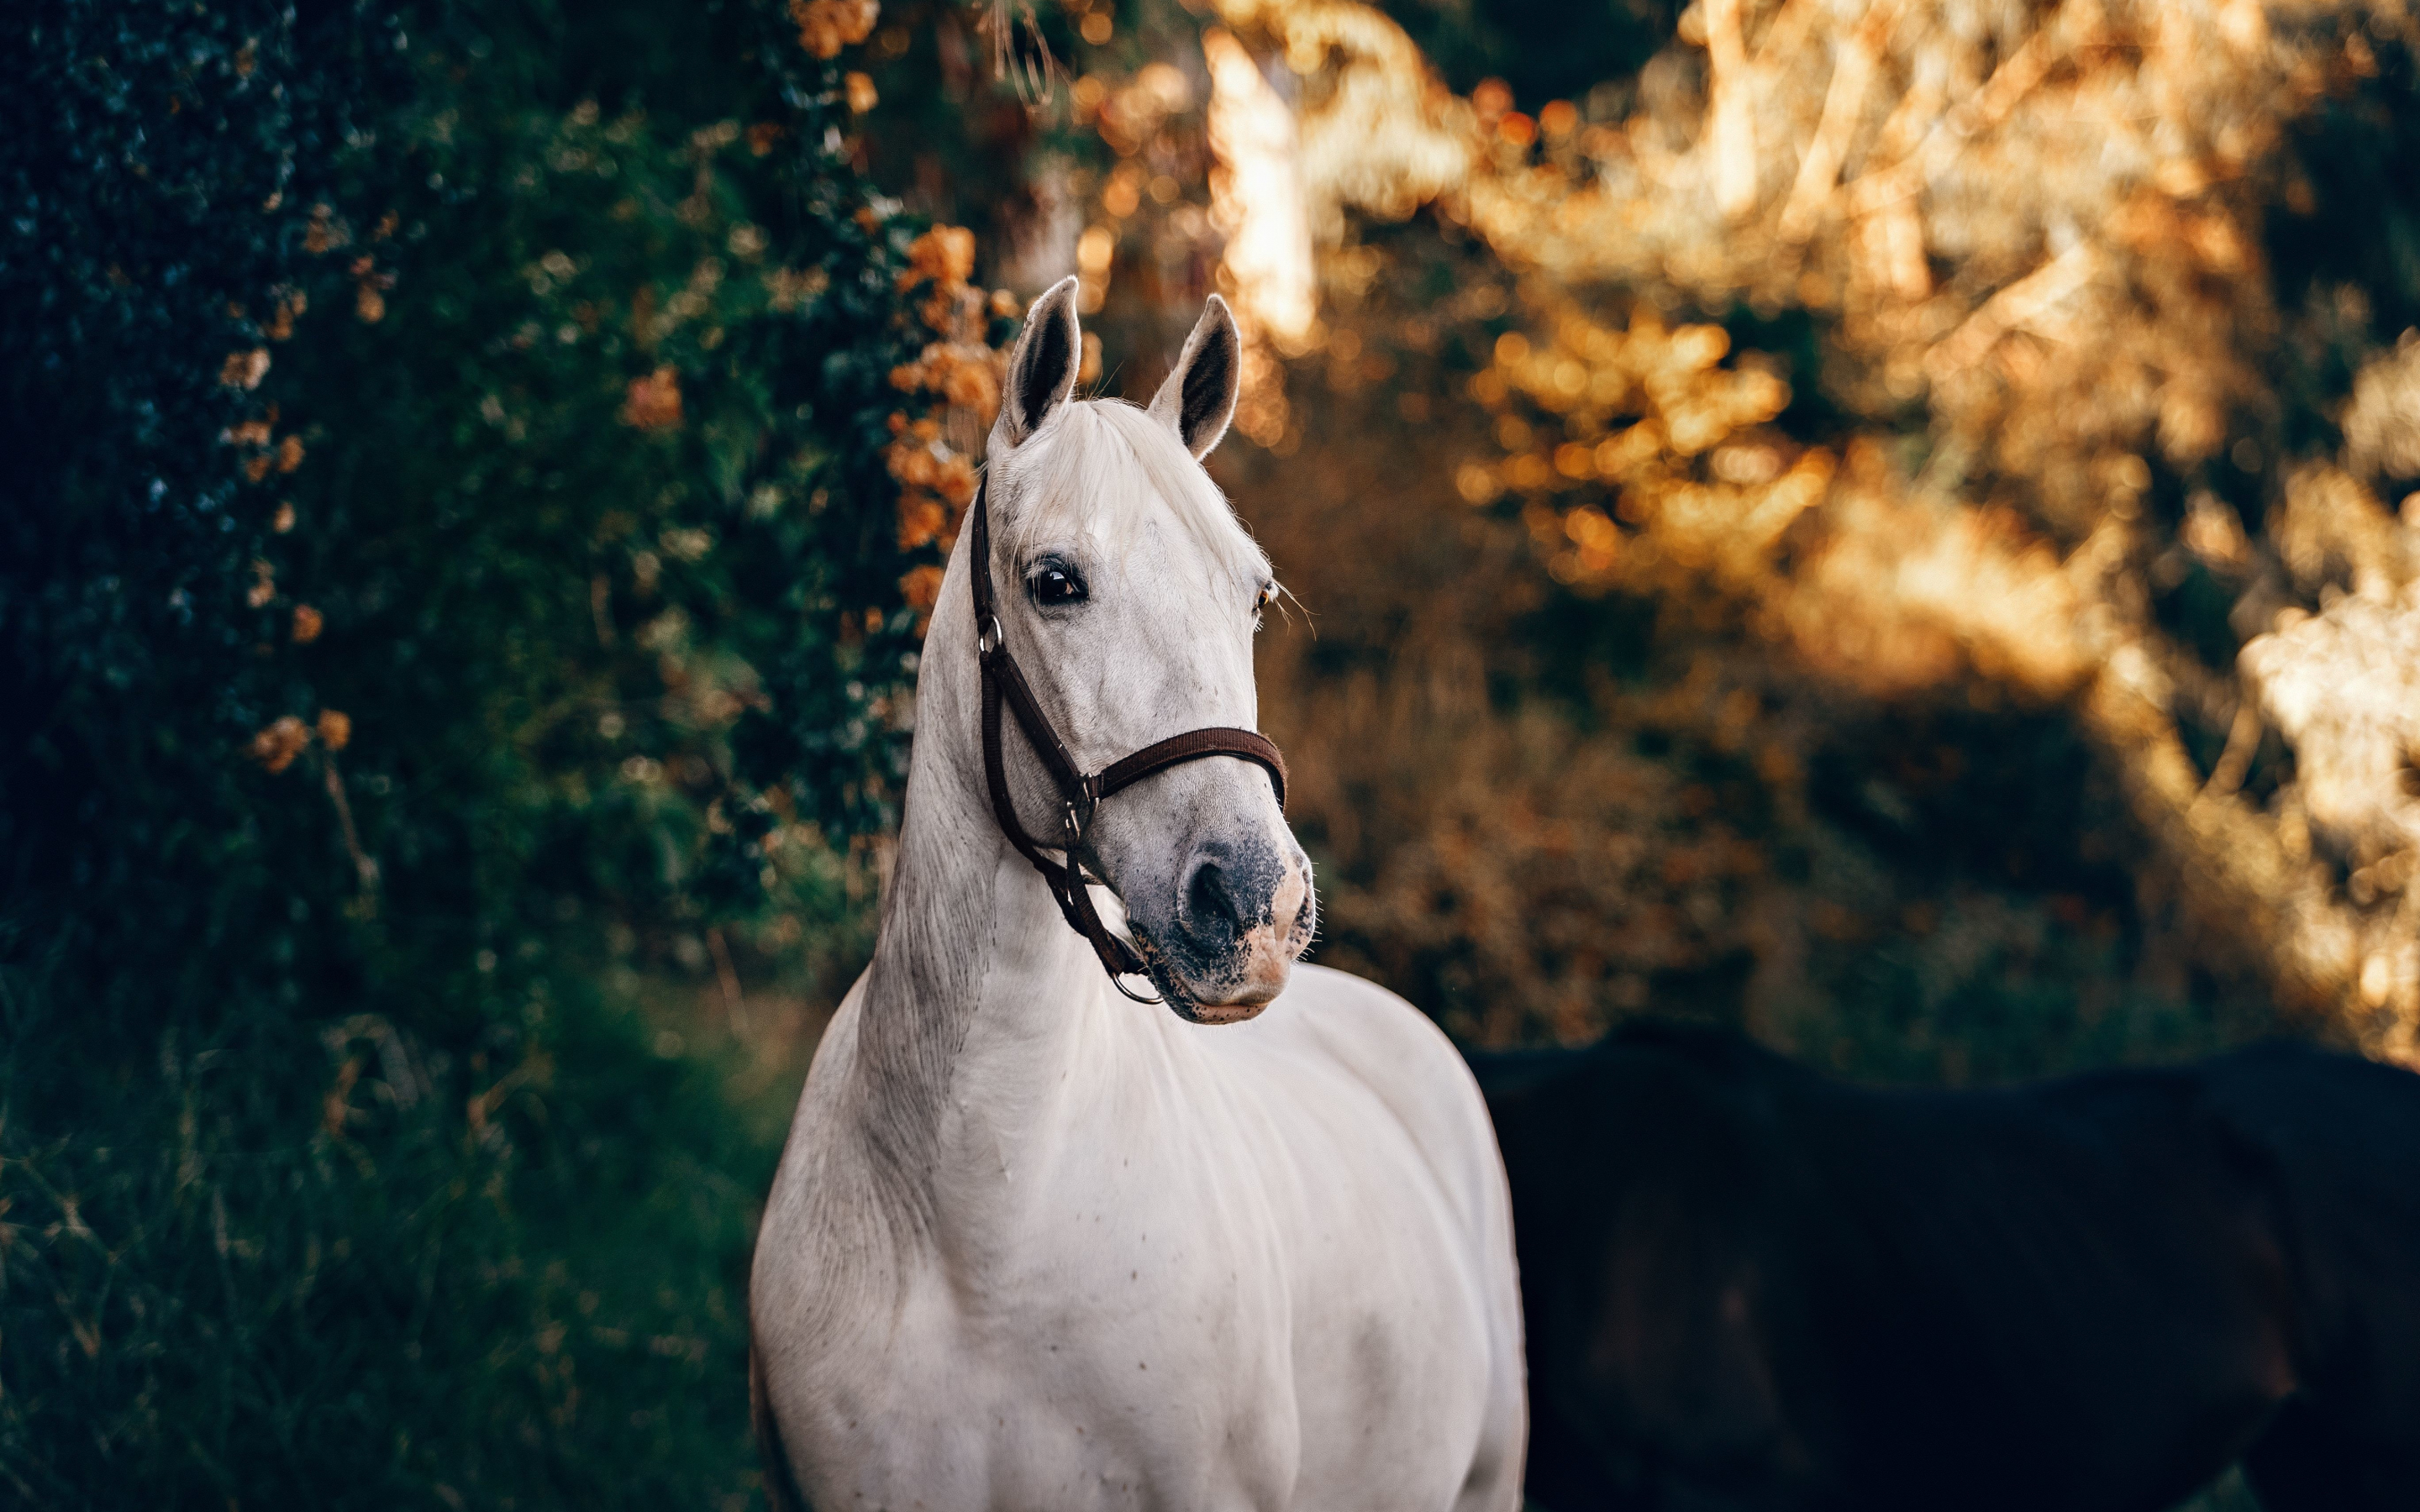 White feline, animal, horse, 2880x1800 wallpaper